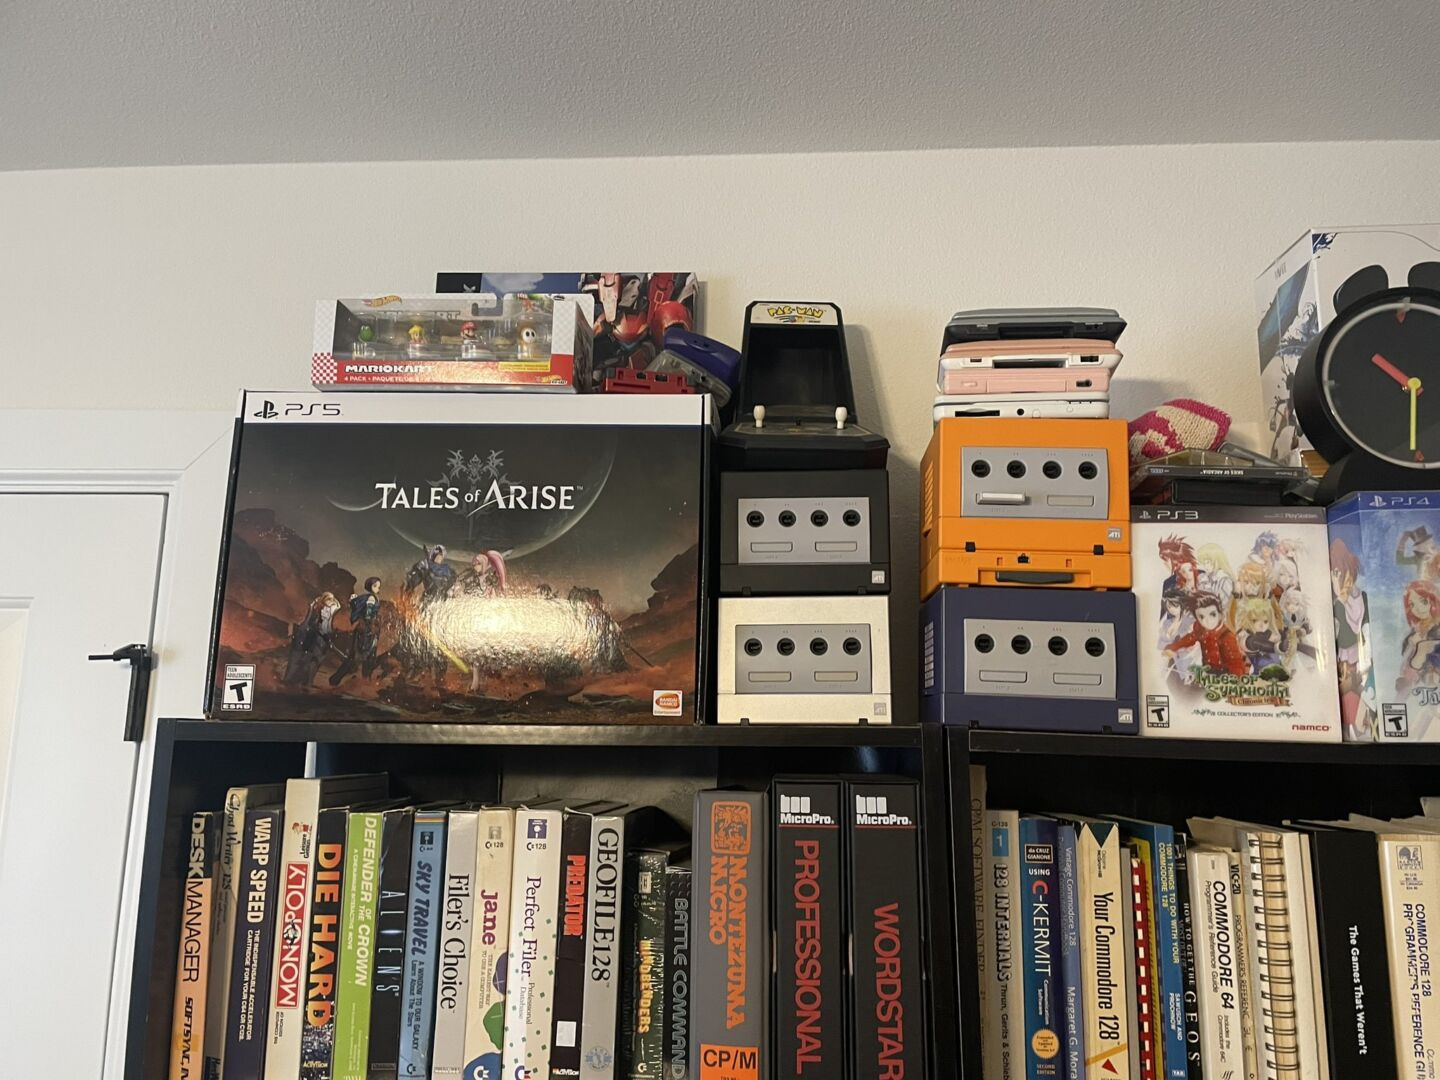 Коллекция консолей Nintendo GameCube и Nintendo DS стоит на книжной полке, заставленной компьютерной классикой.  